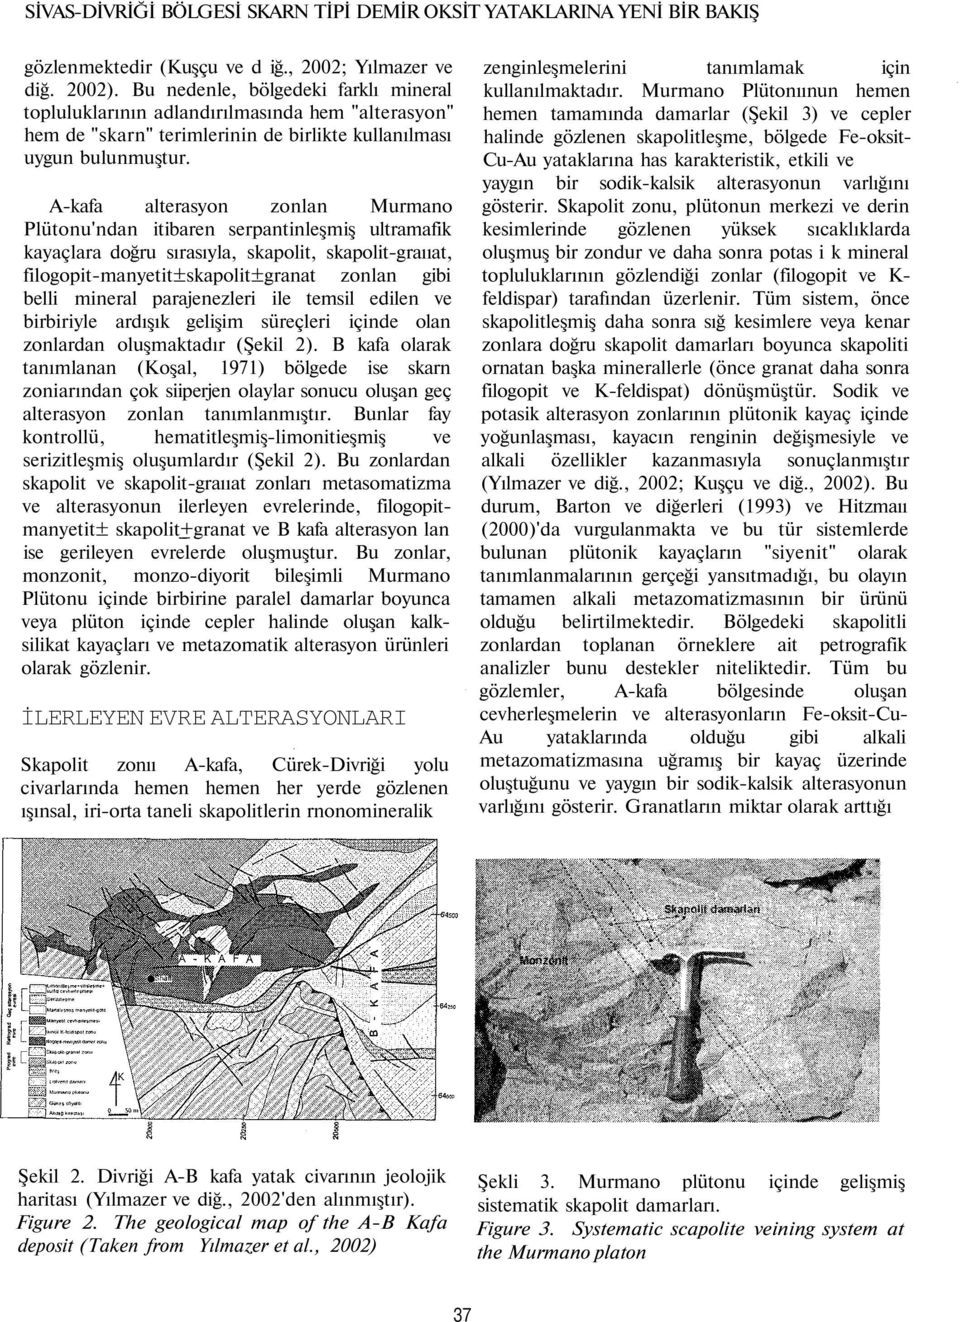 A-kafa alterasyon zonlan Murmano Plütonu'ndan itibaren serpantinleşmiş ultramafik kayaçlara doğru sırasıyla, skapolit, skapolit-graııat, filogopit-manyetit±skapolit±granat zonlan gibi belli mineral